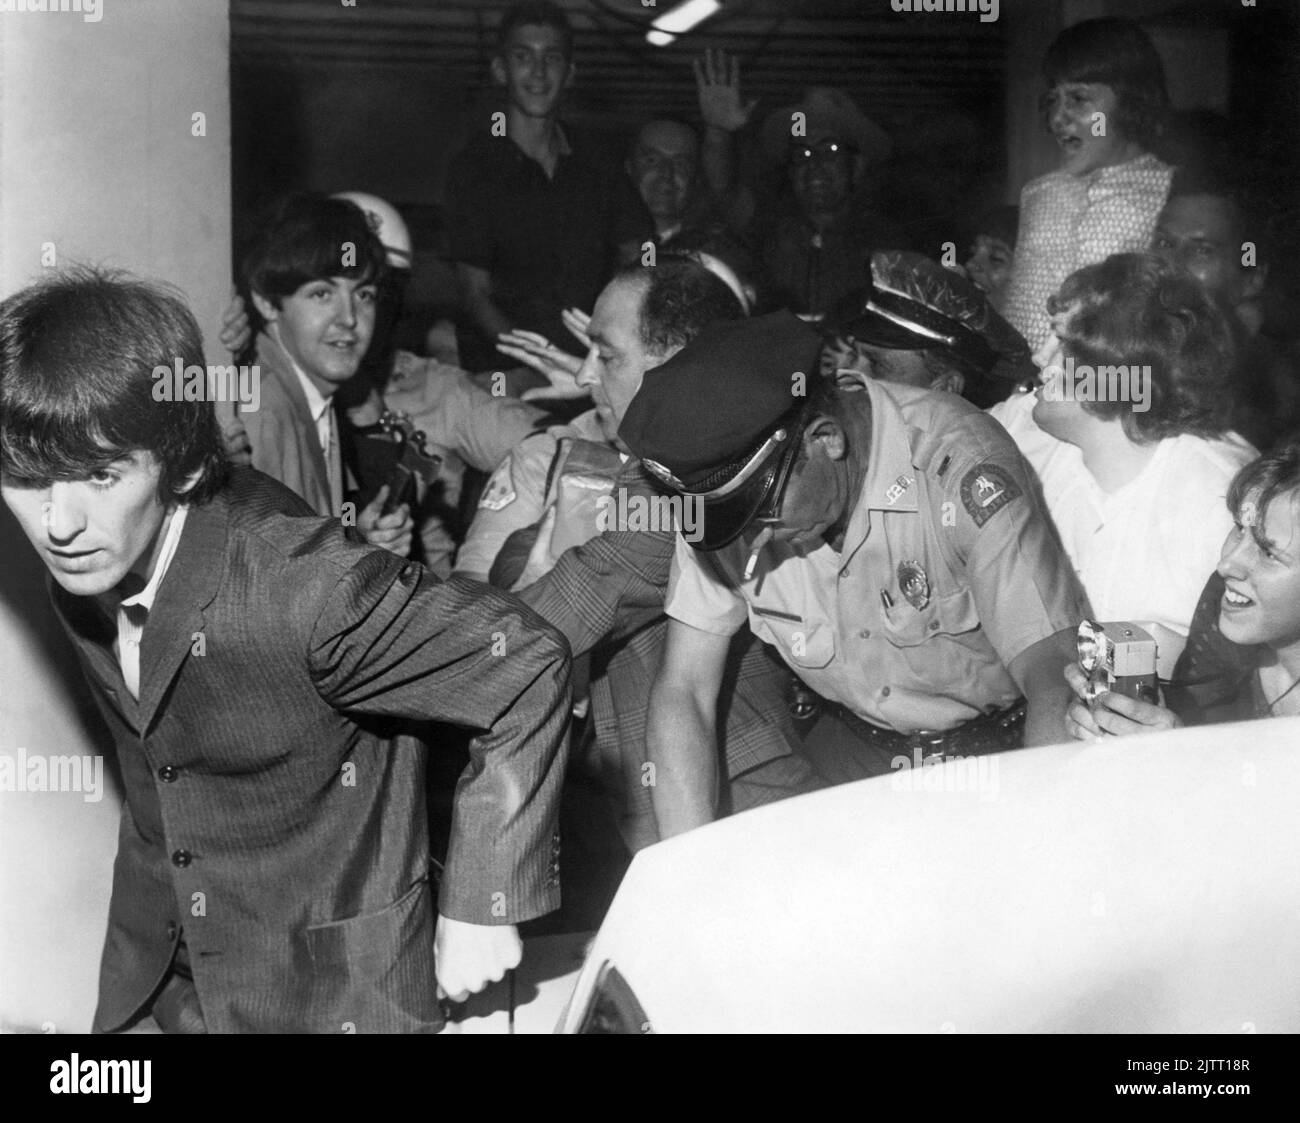 Les Beatles (George Harrison en premier plan et Paul McCartney derrière lui) quittent l'hôtel George Washington avec la police essayant de contrôler les fans pressés alors que le groupe se dirigeait vers leur concert Gator Bowl à Jacksonville, Floride, sur 11 septembre 1964. (ÉTATS-UNIS) Banque D'Images